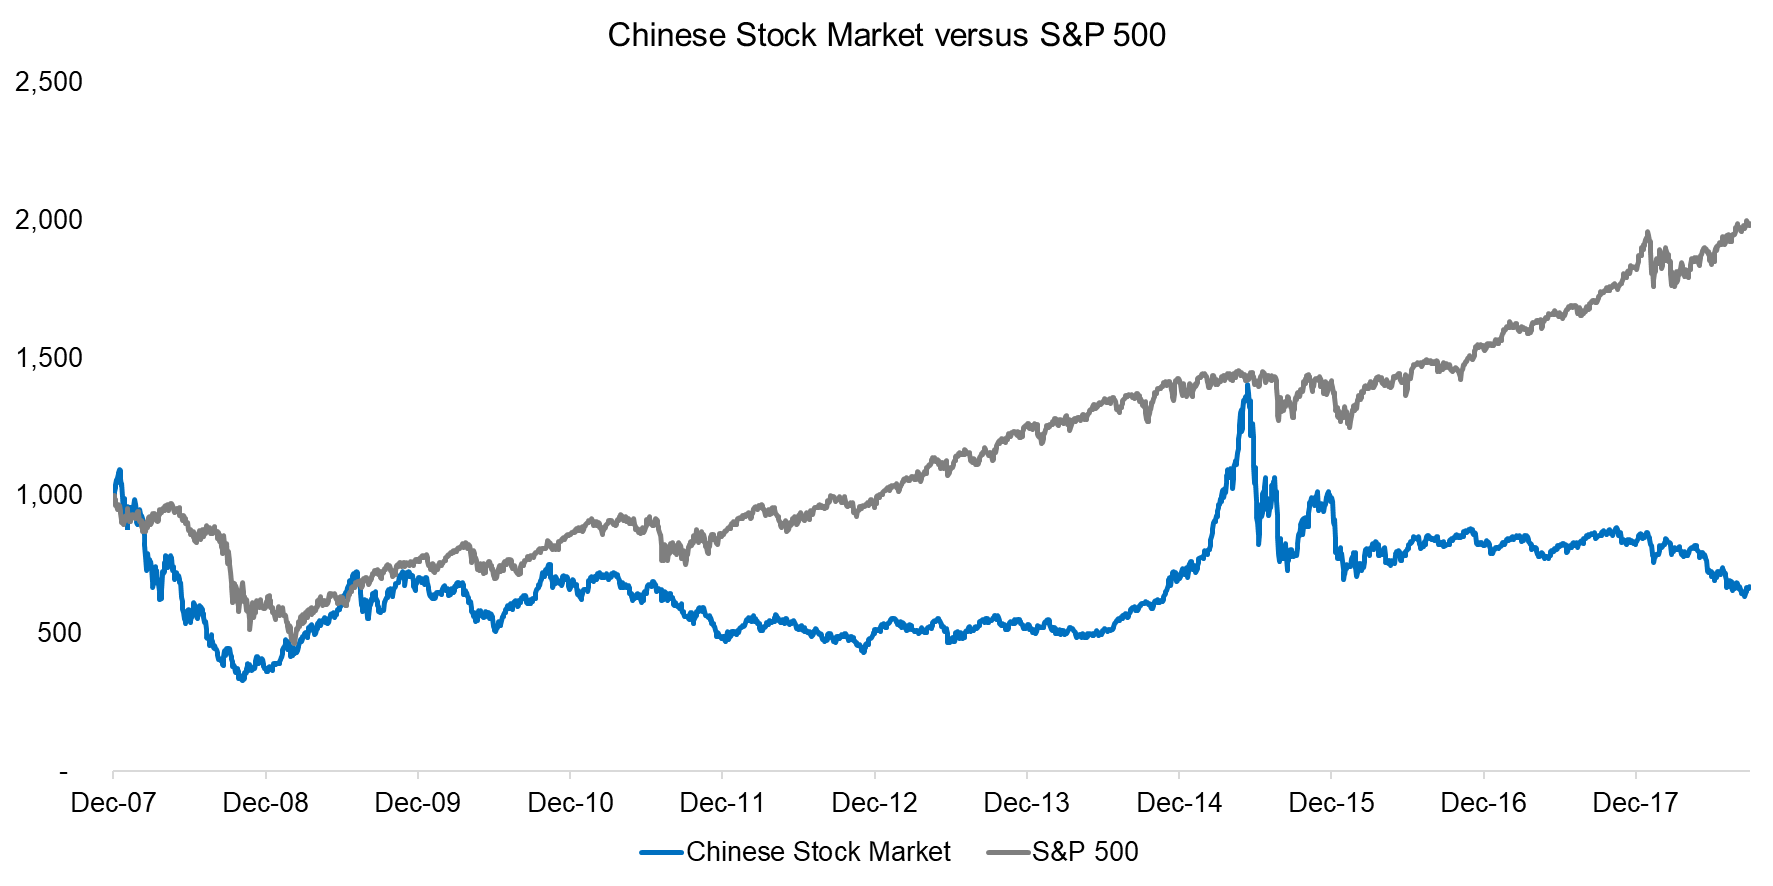 Chinese Stock Market versus S&P 500